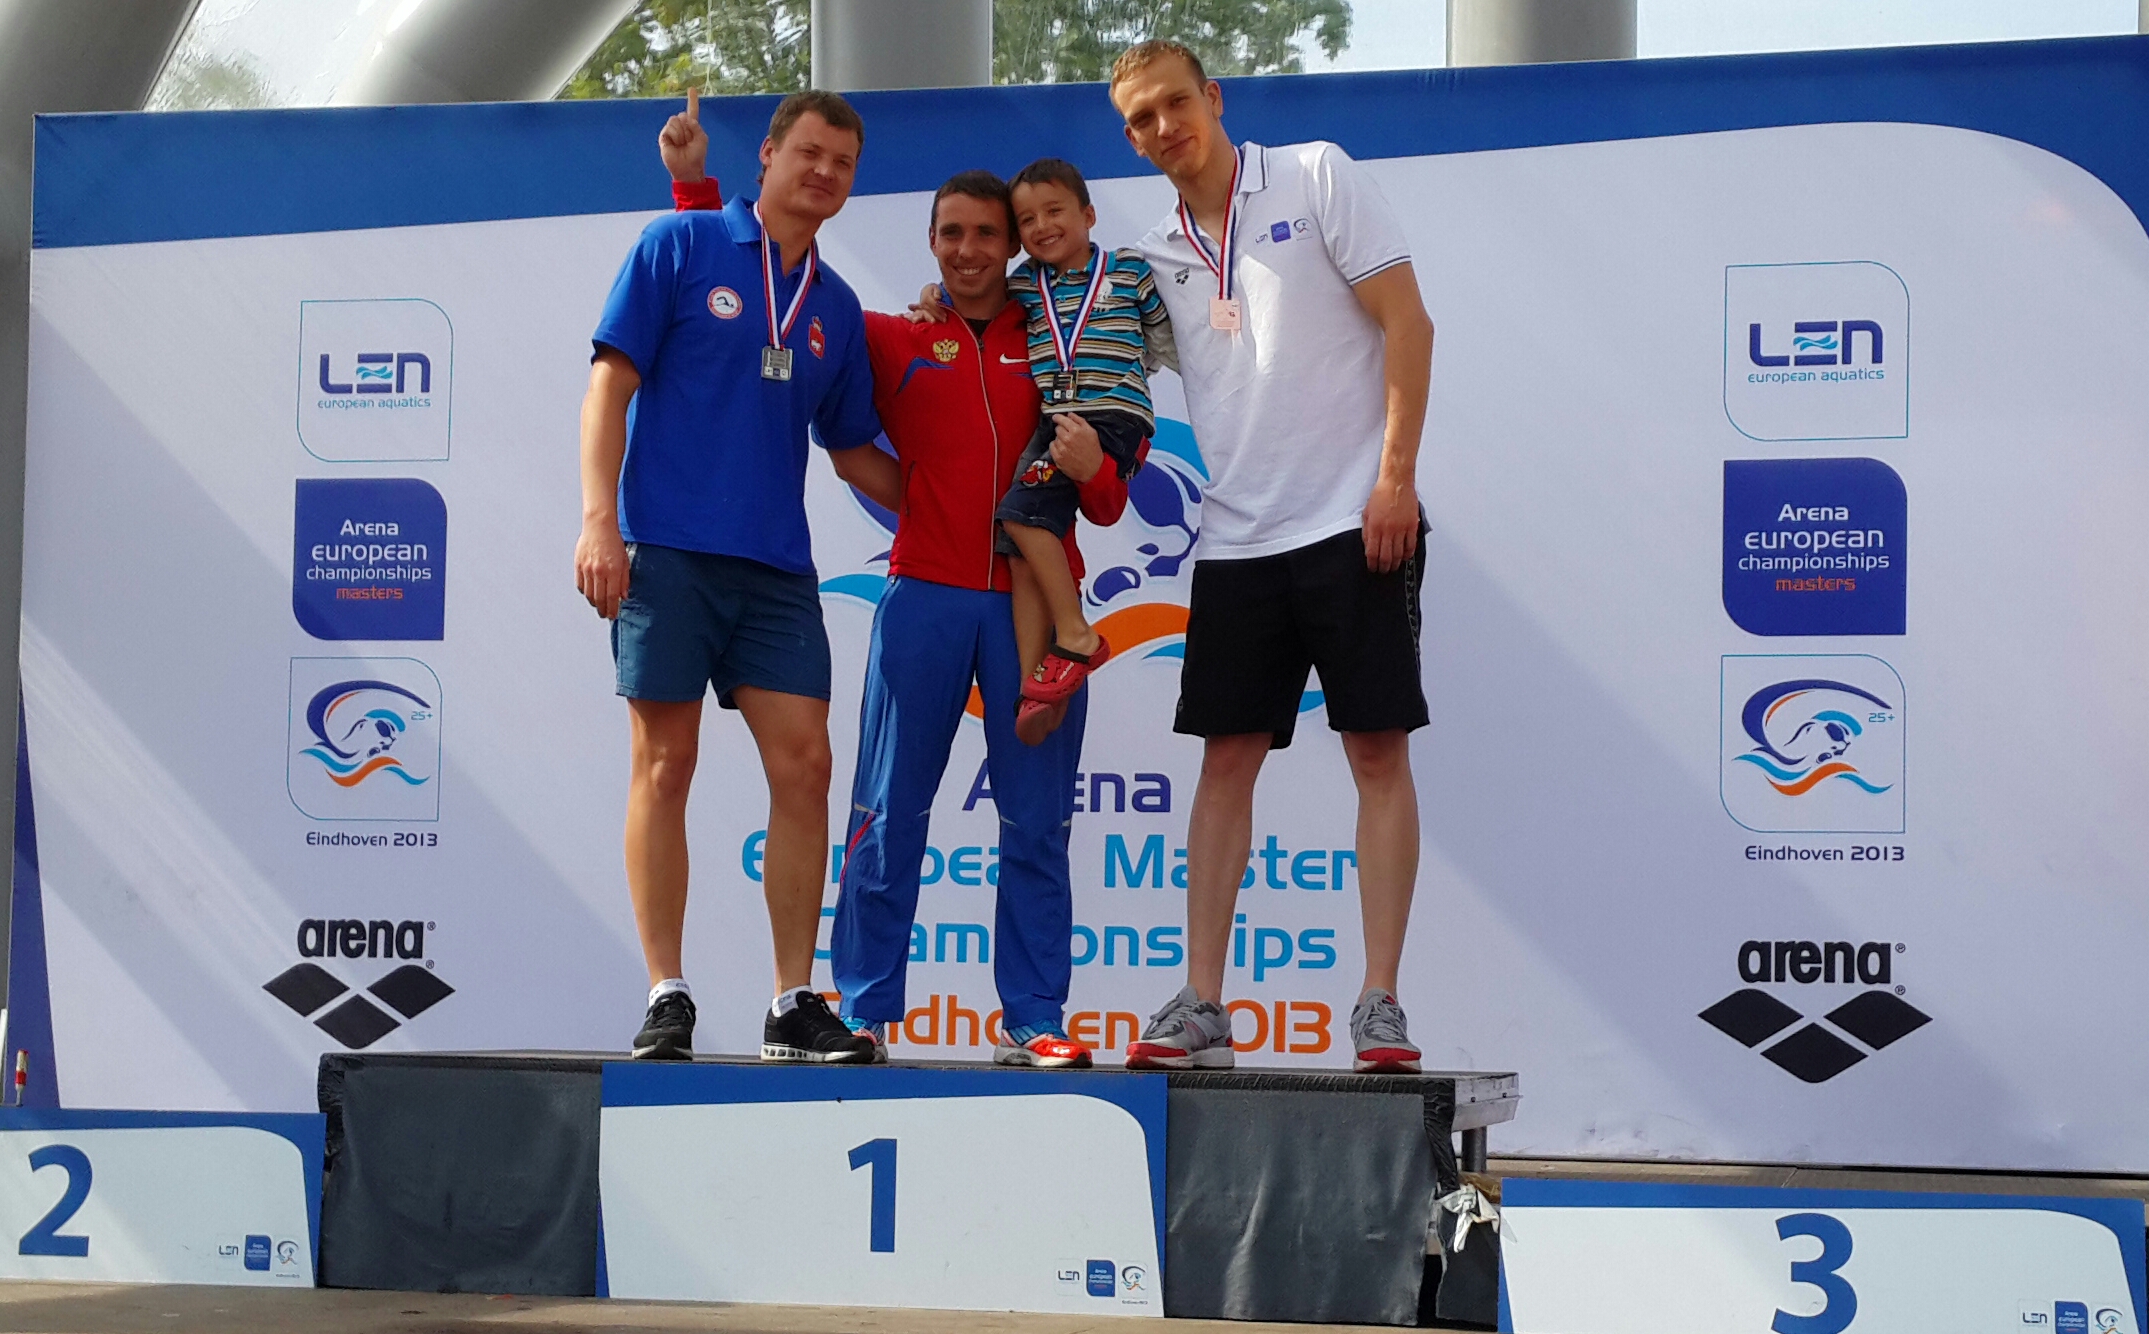 Золото и серебро чемпионата Европы на дистанциях 200 и 100 метров брасс на чемпионате Европы по плаванию в категории Мастерс